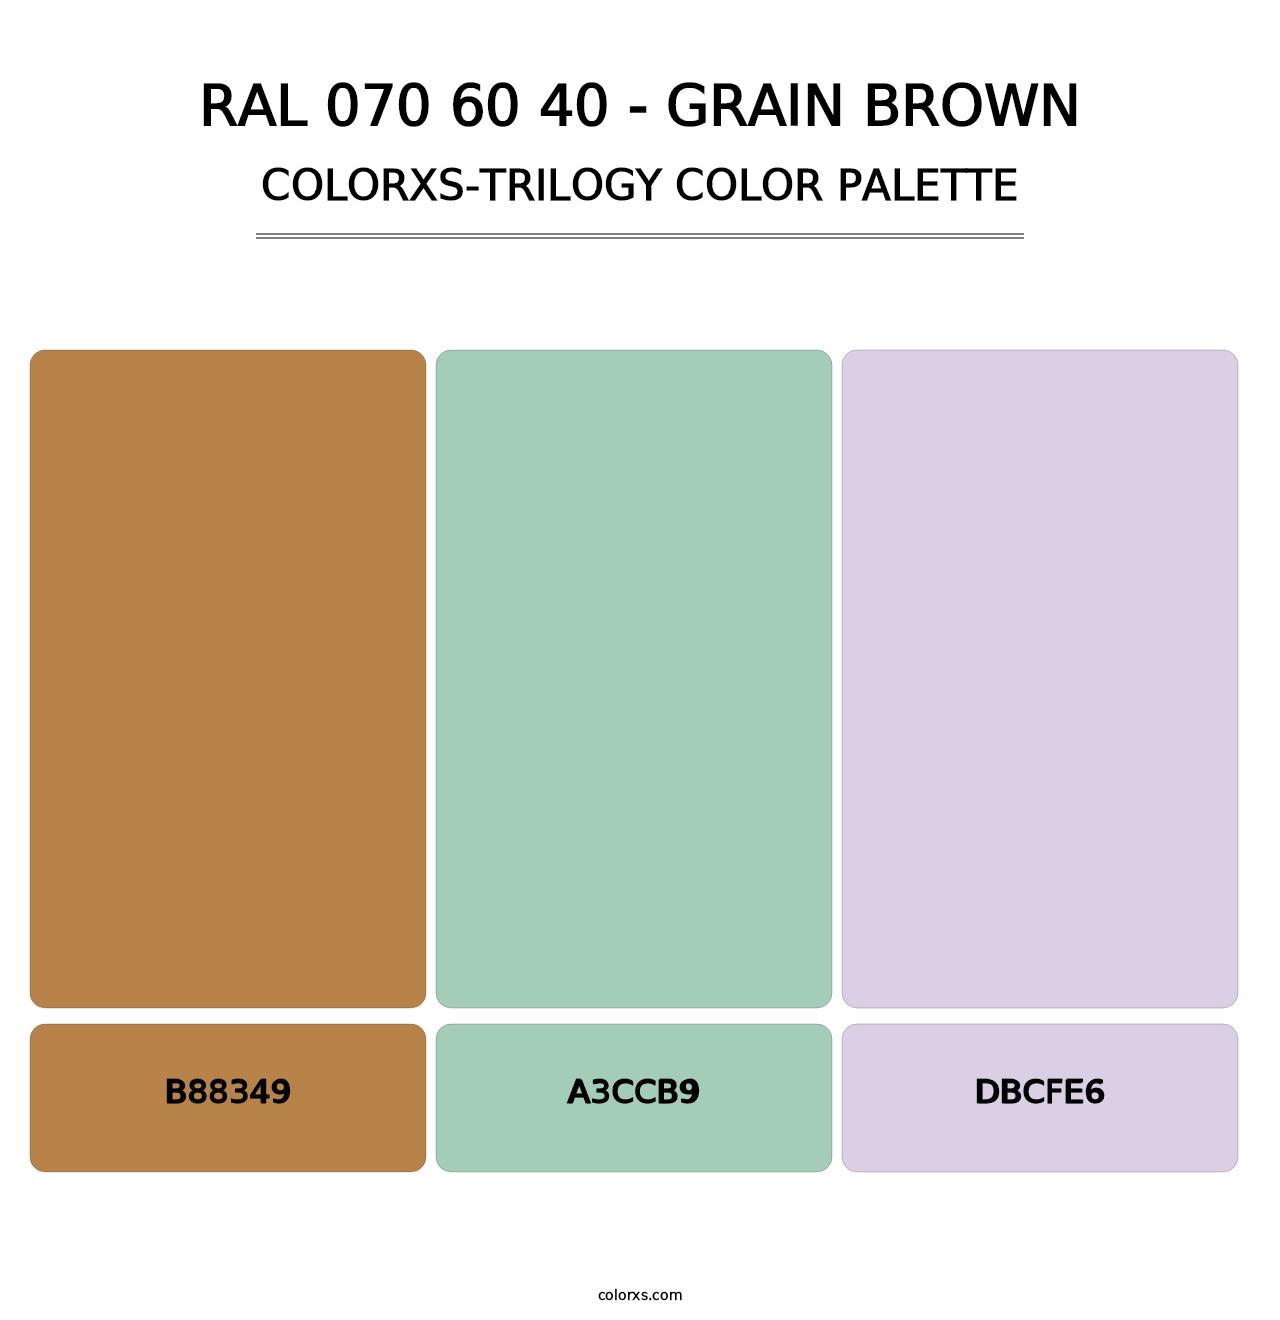 RAL 070 60 40 - Grain Brown - Colorxs Trilogy Palette